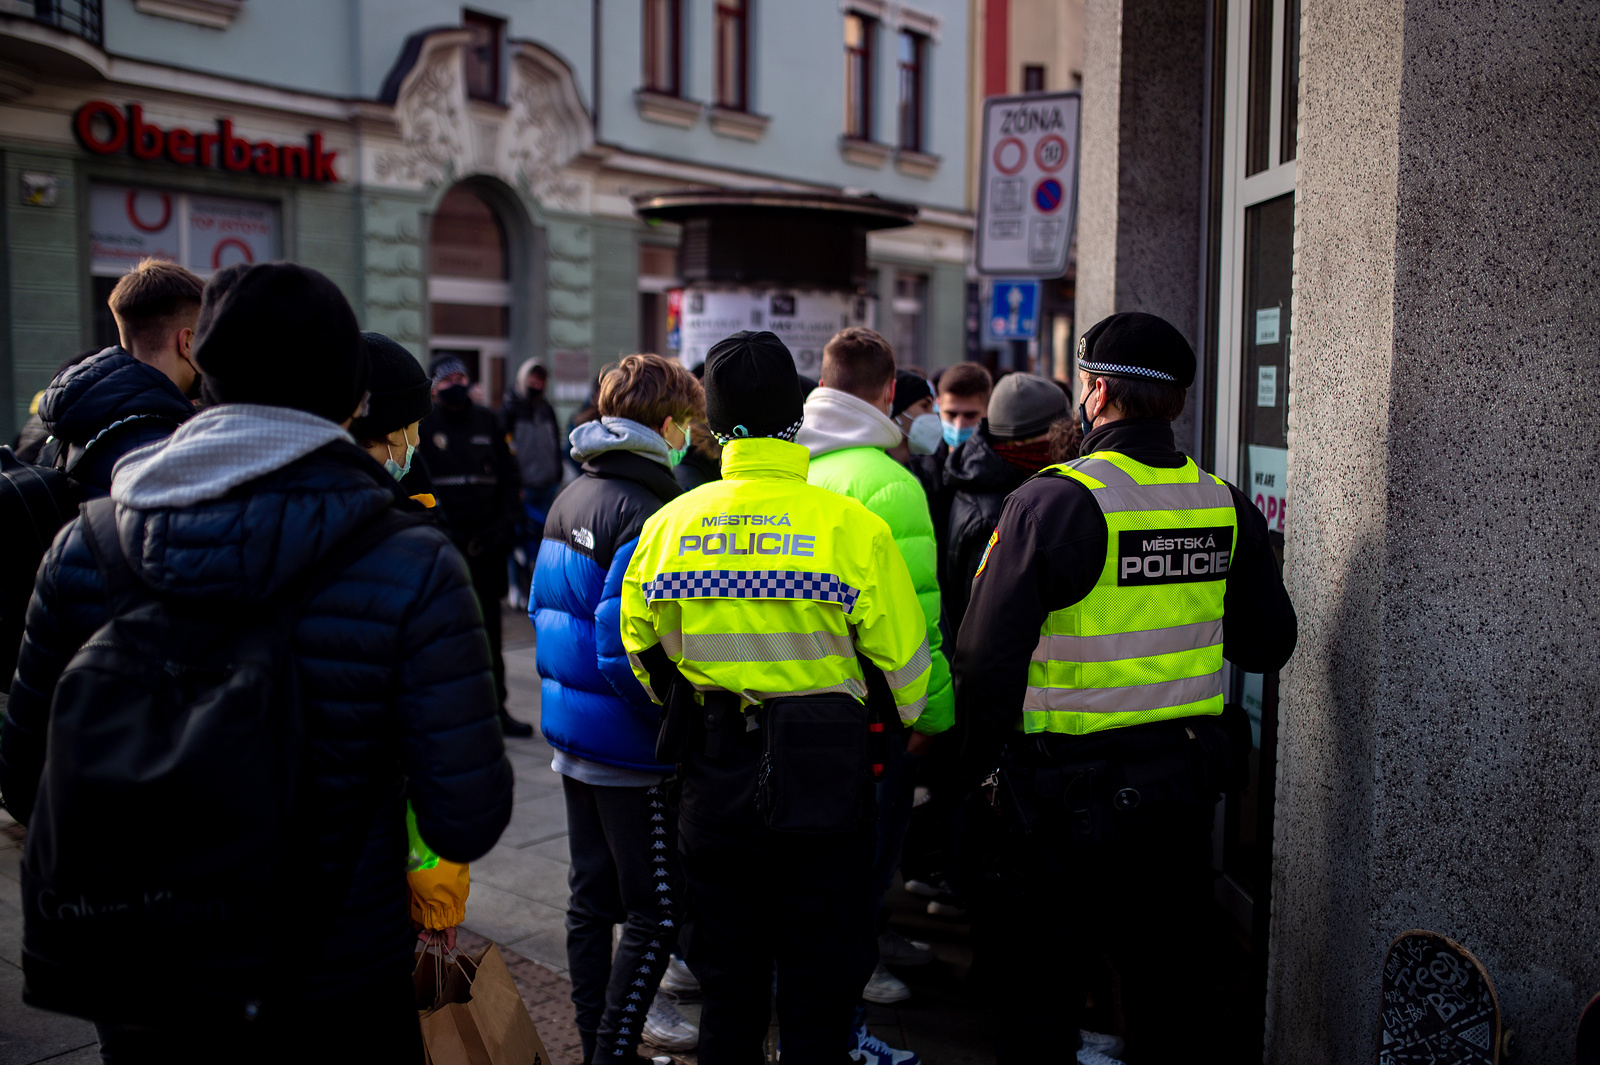 Šílenství v Ostravě kvůli limitované edici. Lidé čekali na boty přes noc -  Moravskoslezský deník